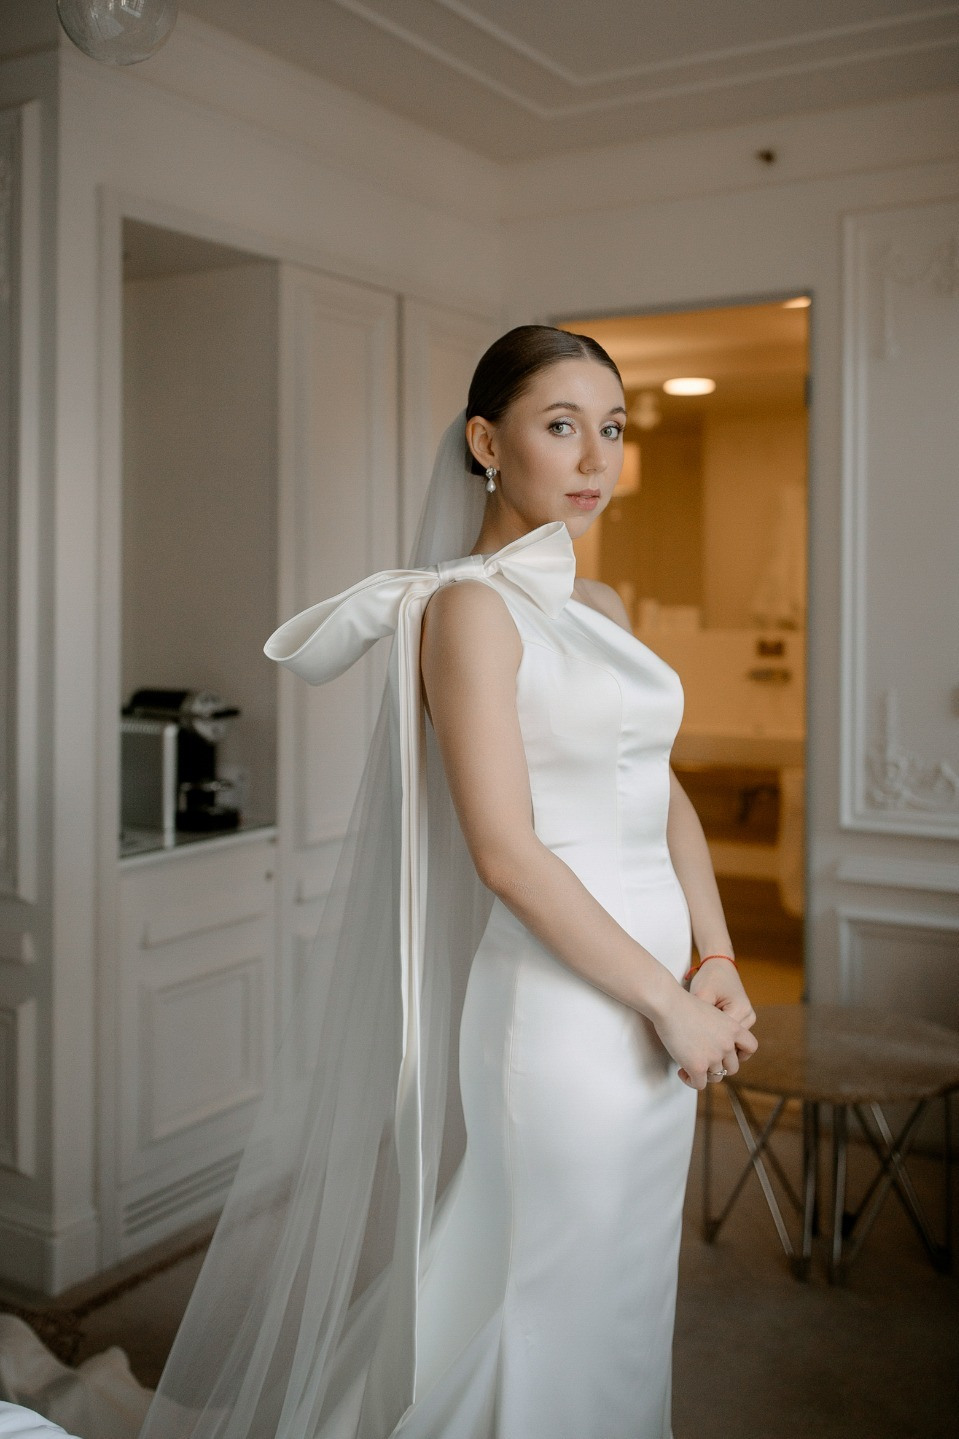 Элегантная камерная свадьба в центре Петербурга